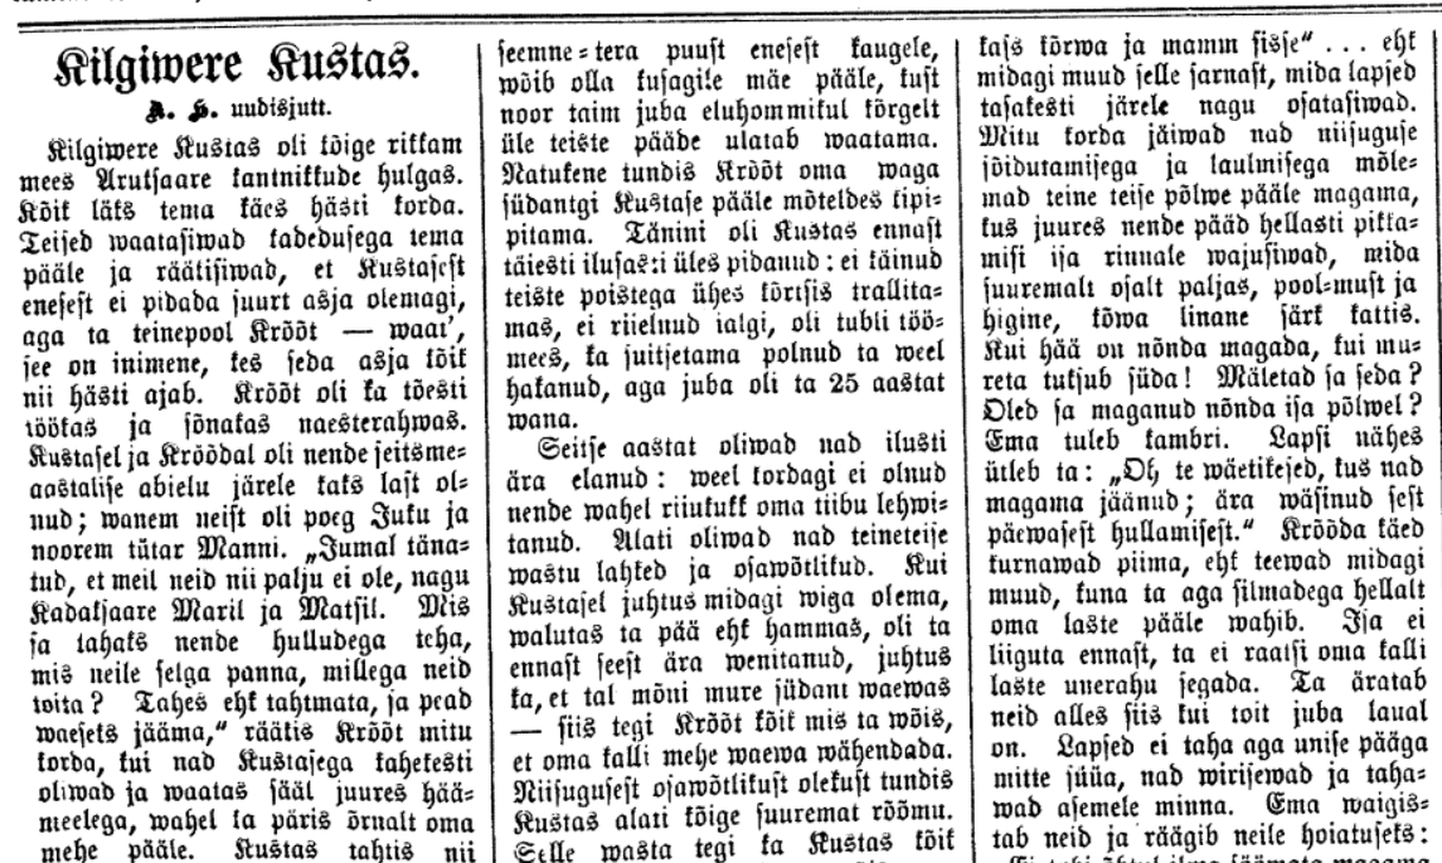 «Kilgivere Kustas» hakkas ilmuma järjejutuna Postimehes 1. septembril 1900.